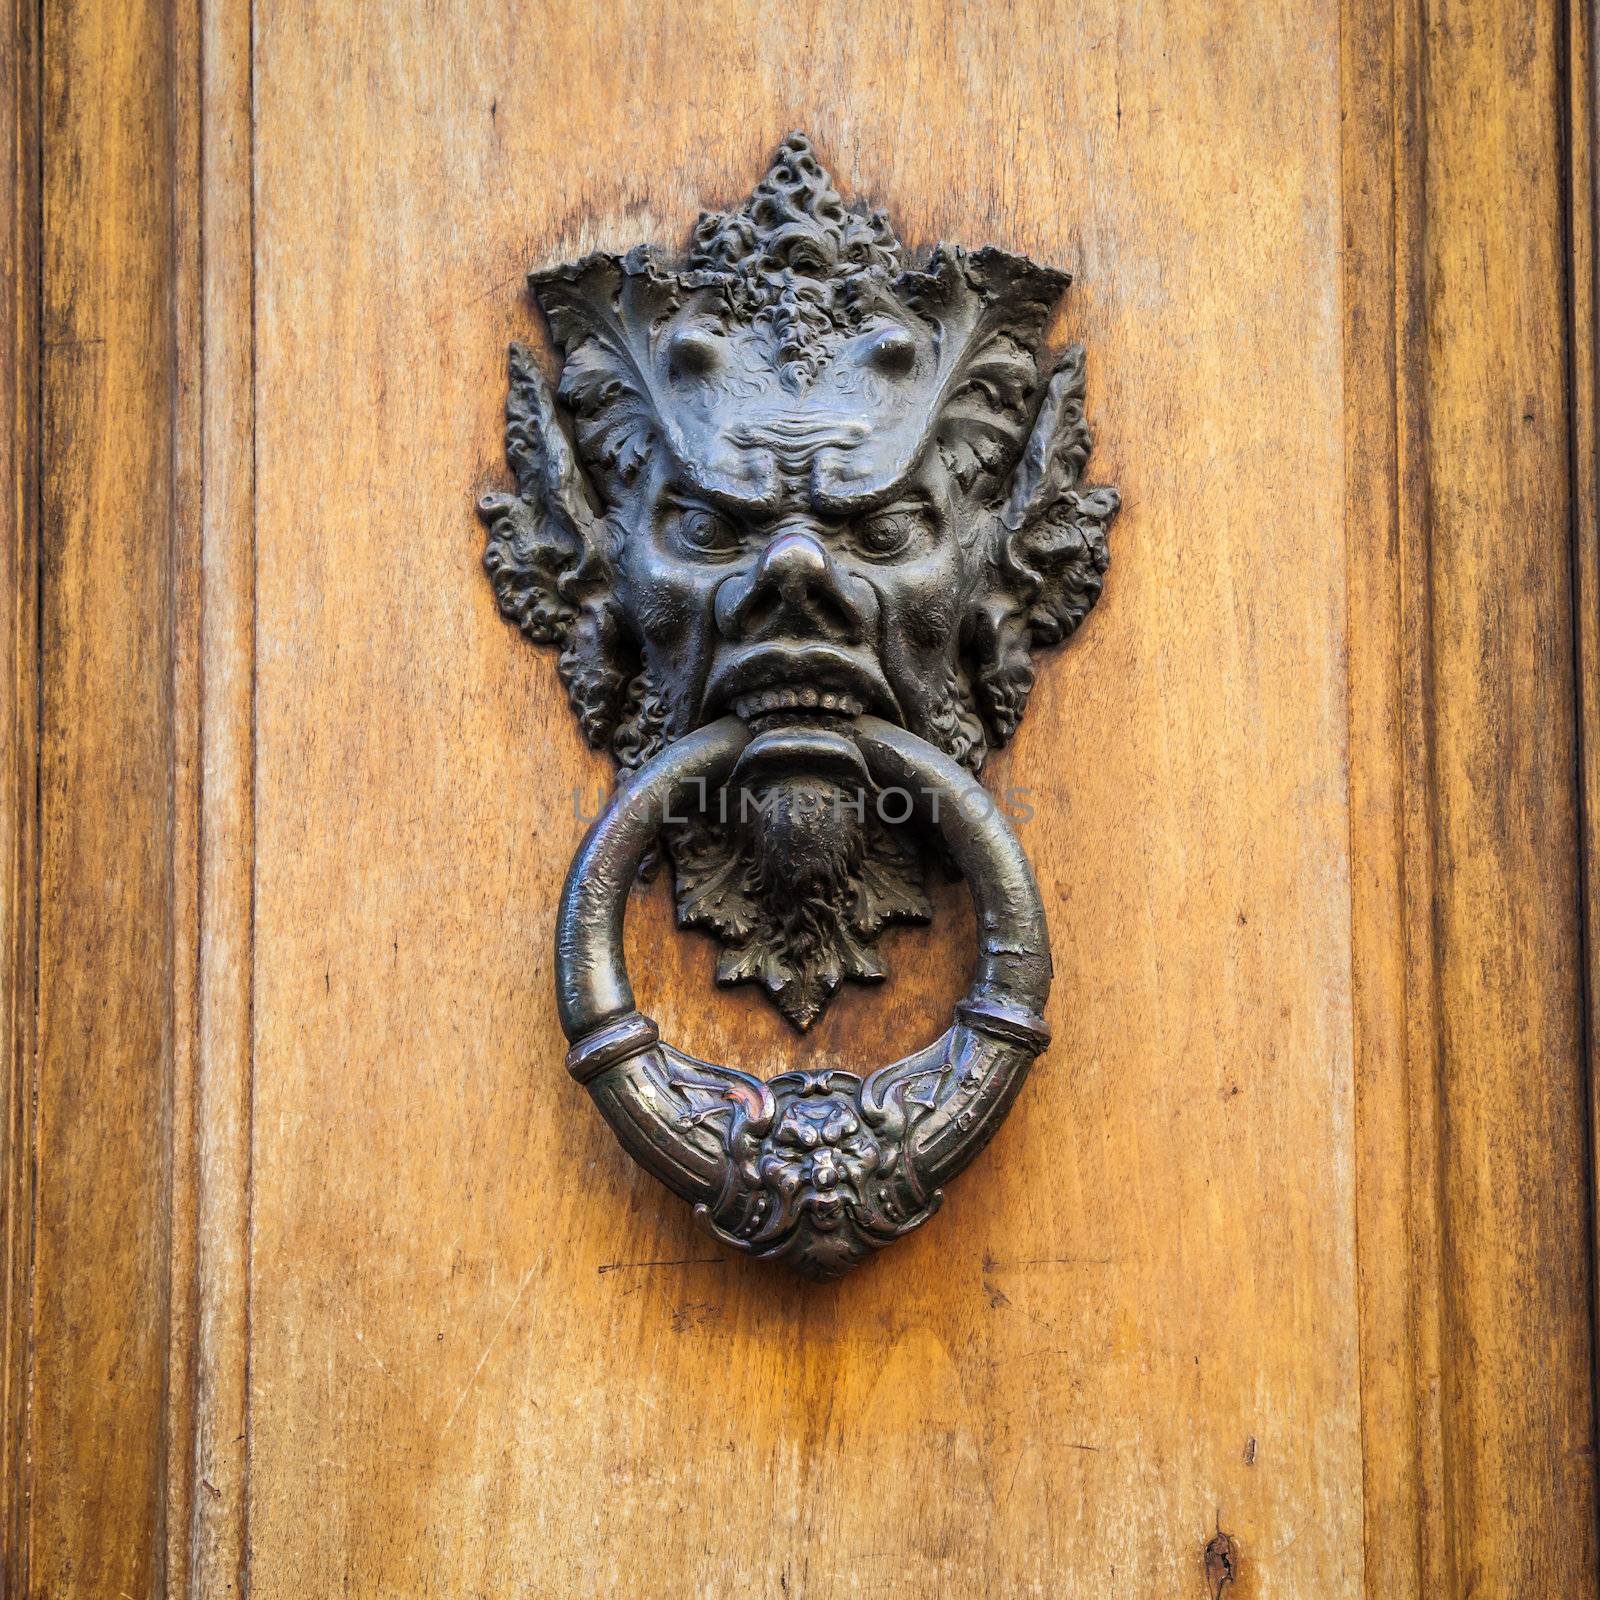 Door knoker on an old wodden door in Tuscany - Italy